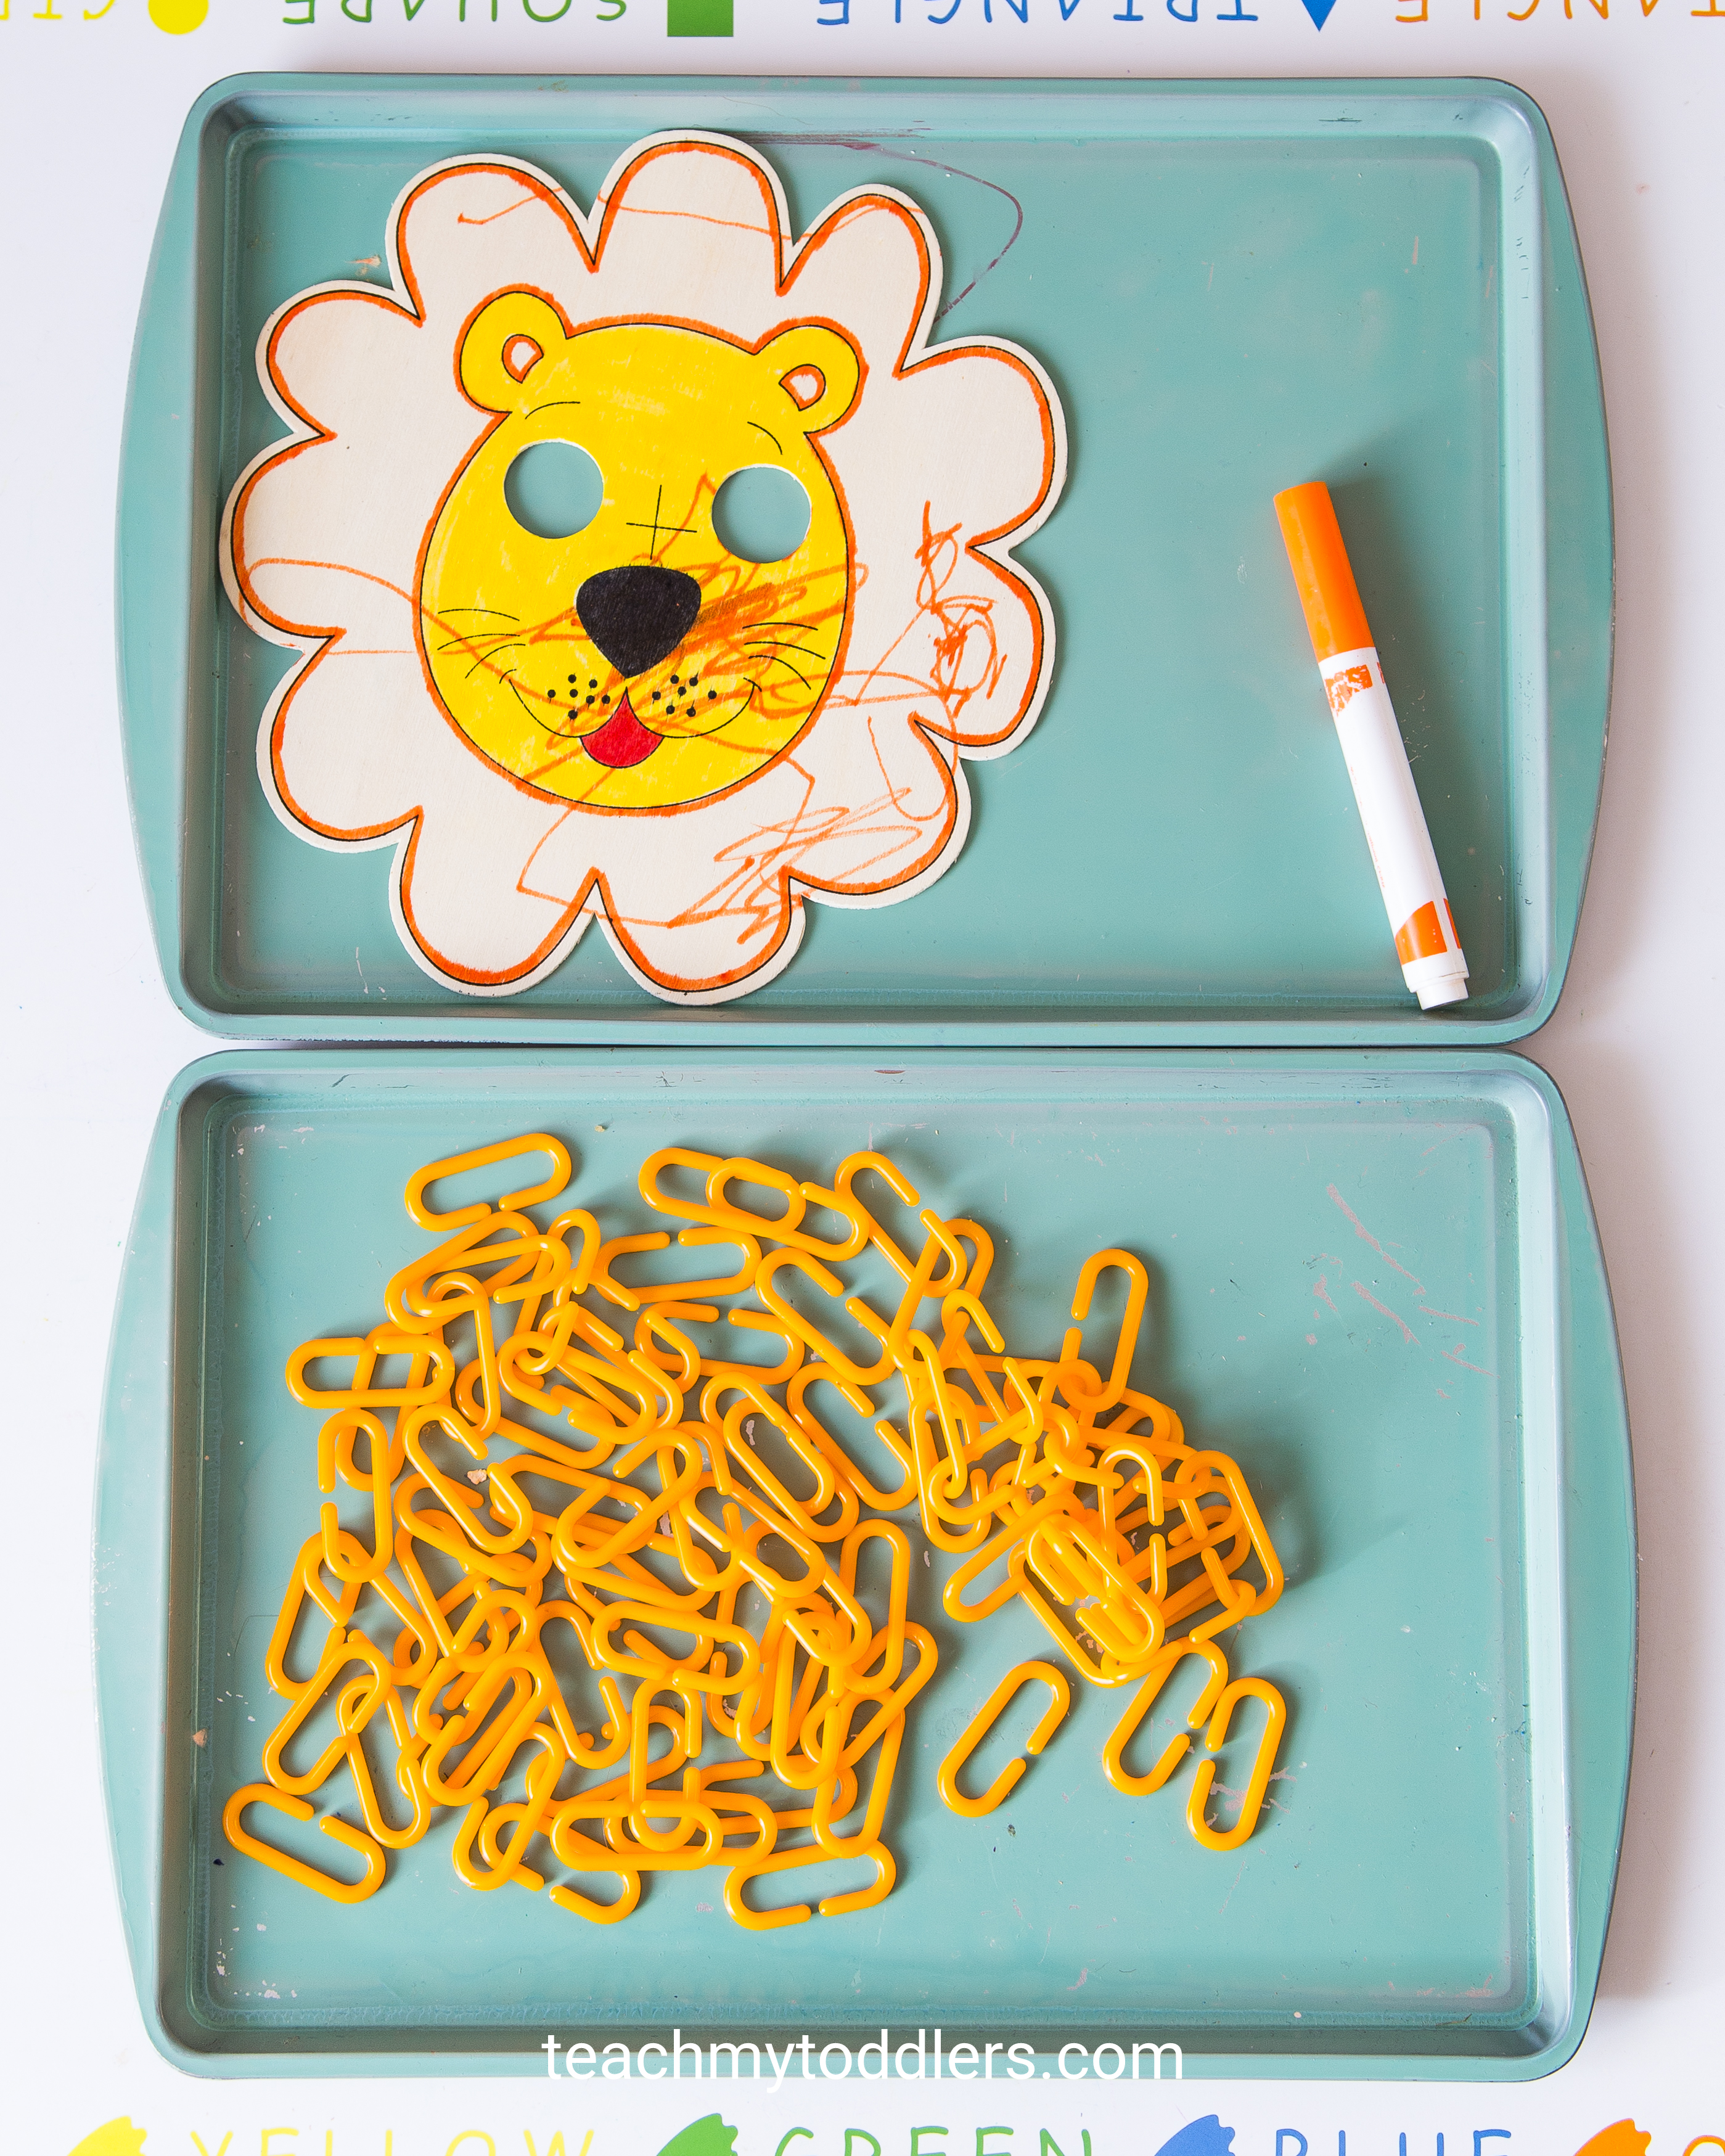 A fun idea to teach your toddler the color orange